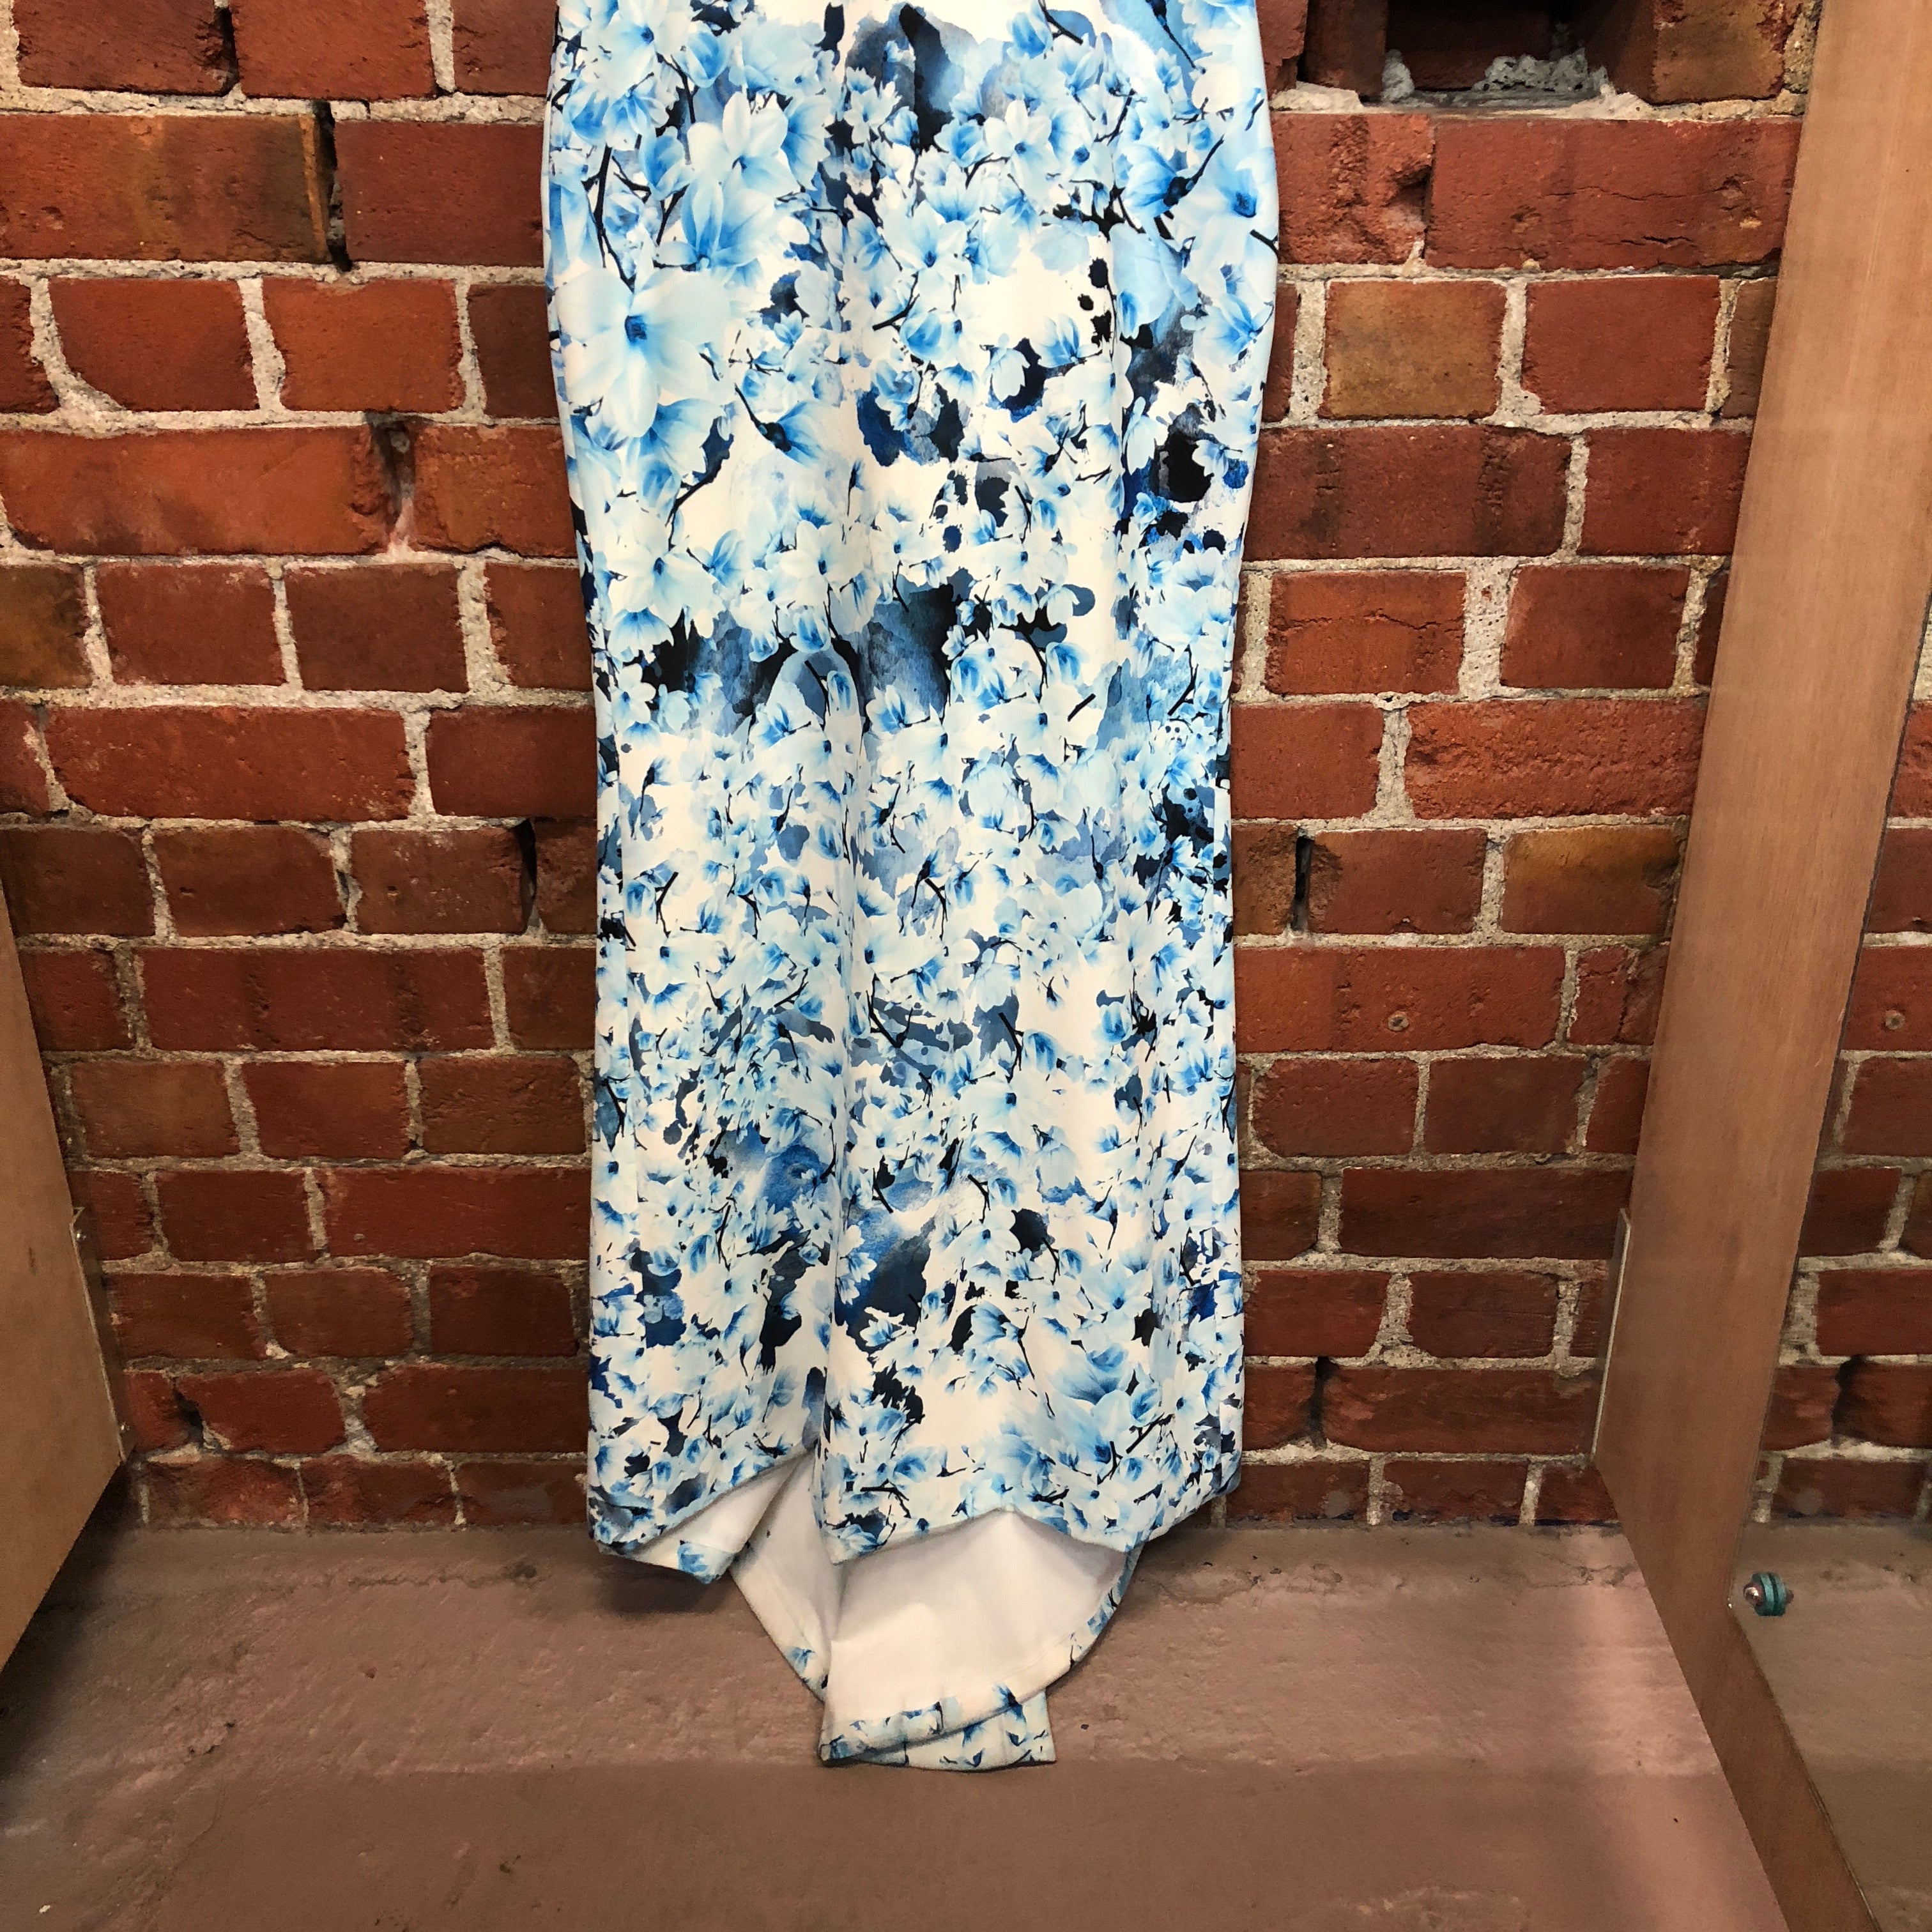 USA Designer silk gown